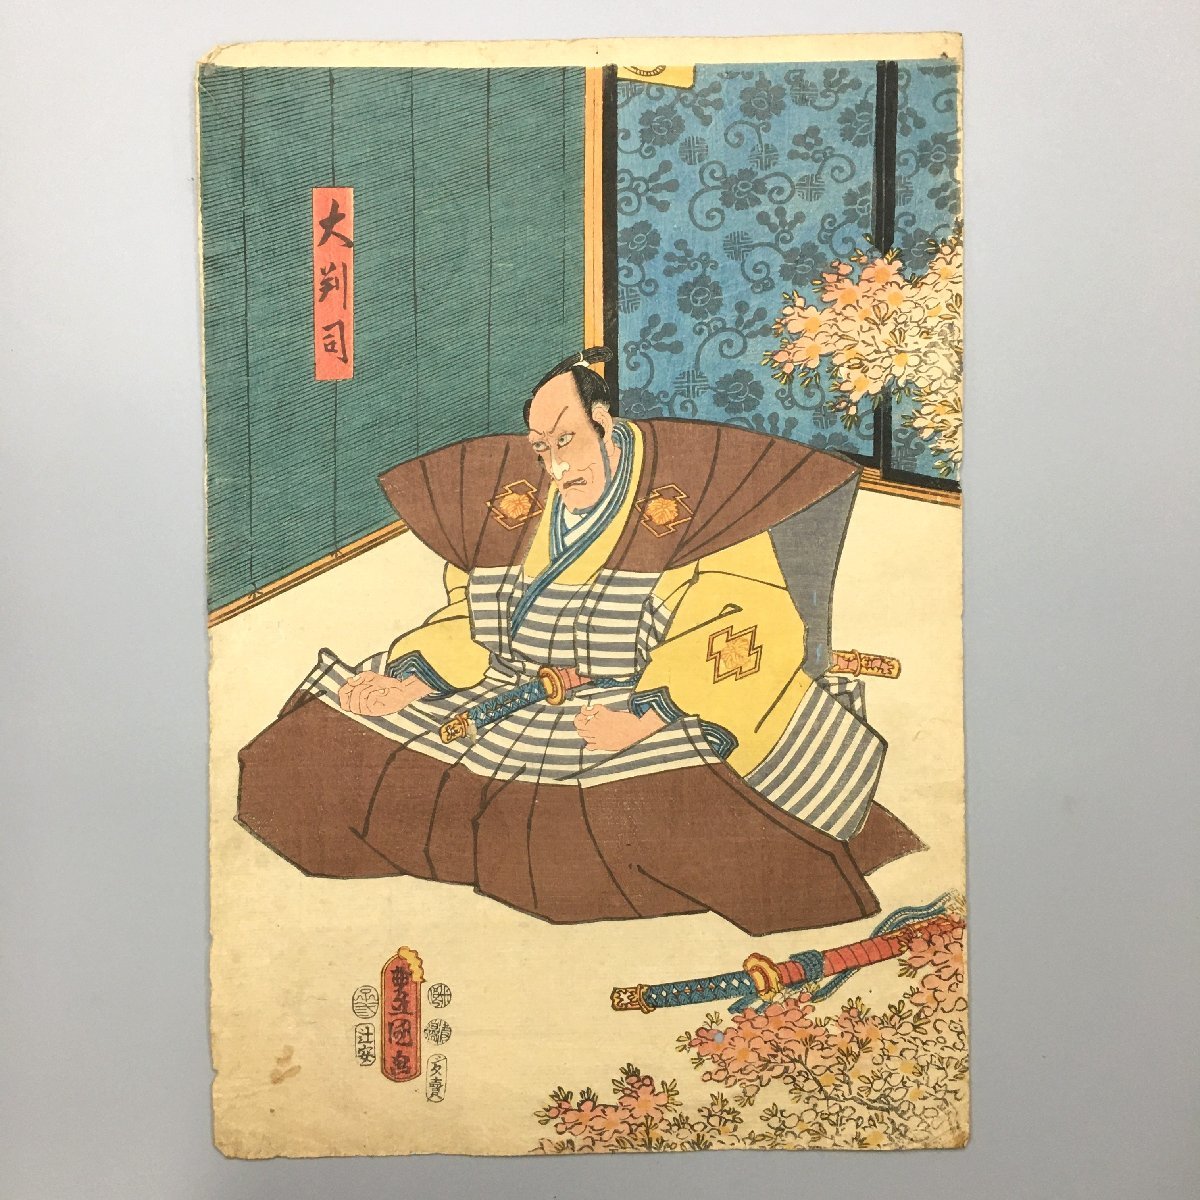 تنسيق كبير Ukiyo-e Oban Tsukasa بواسطة Toyokuni, قطعة الفترة, الطباعة على الخشب, نيشيكي إي, تلوين, أوكييو إي, مطبوعات, آحرون